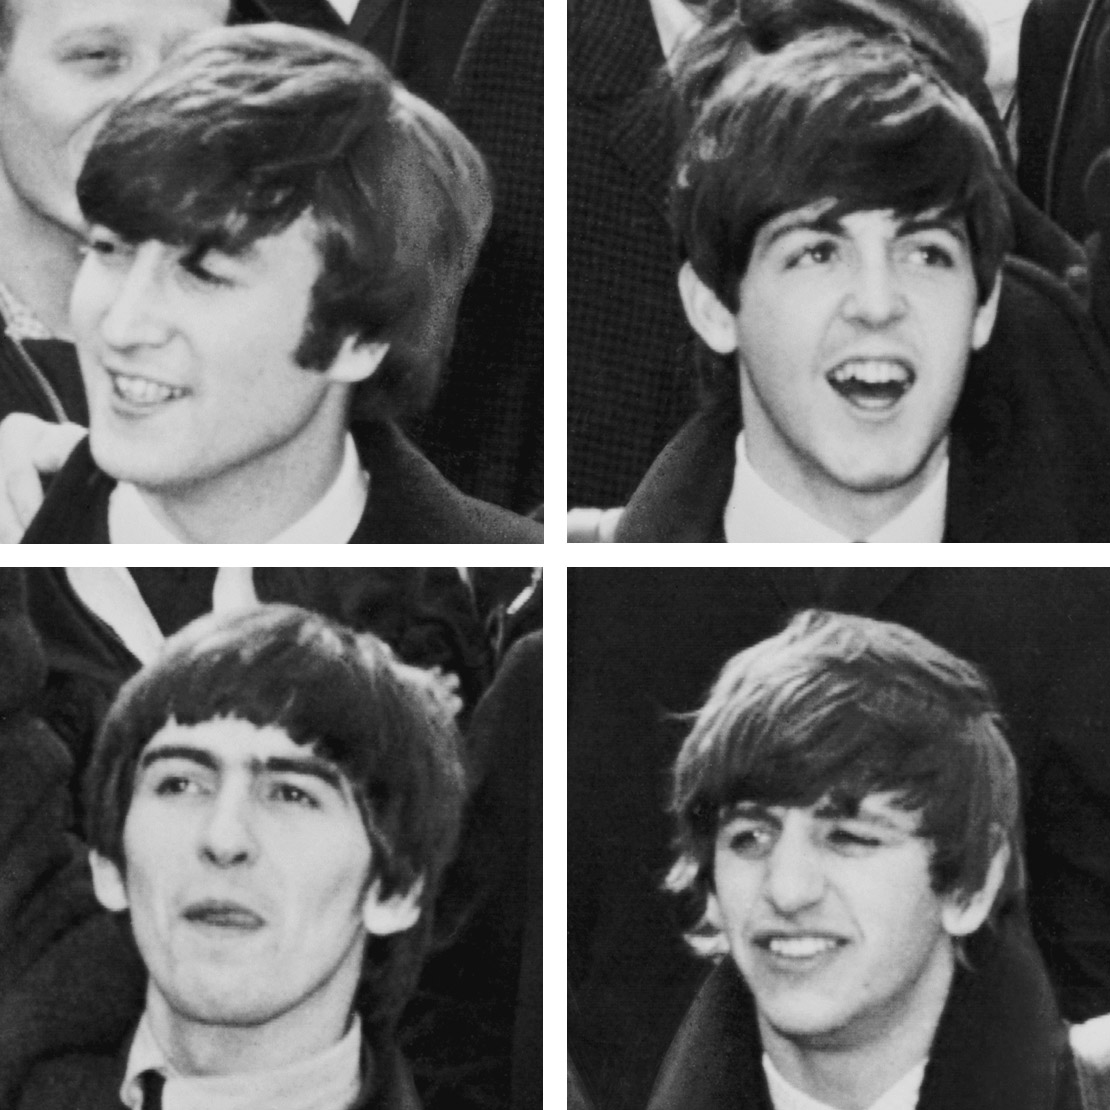 Beatles Songs in the Key of C